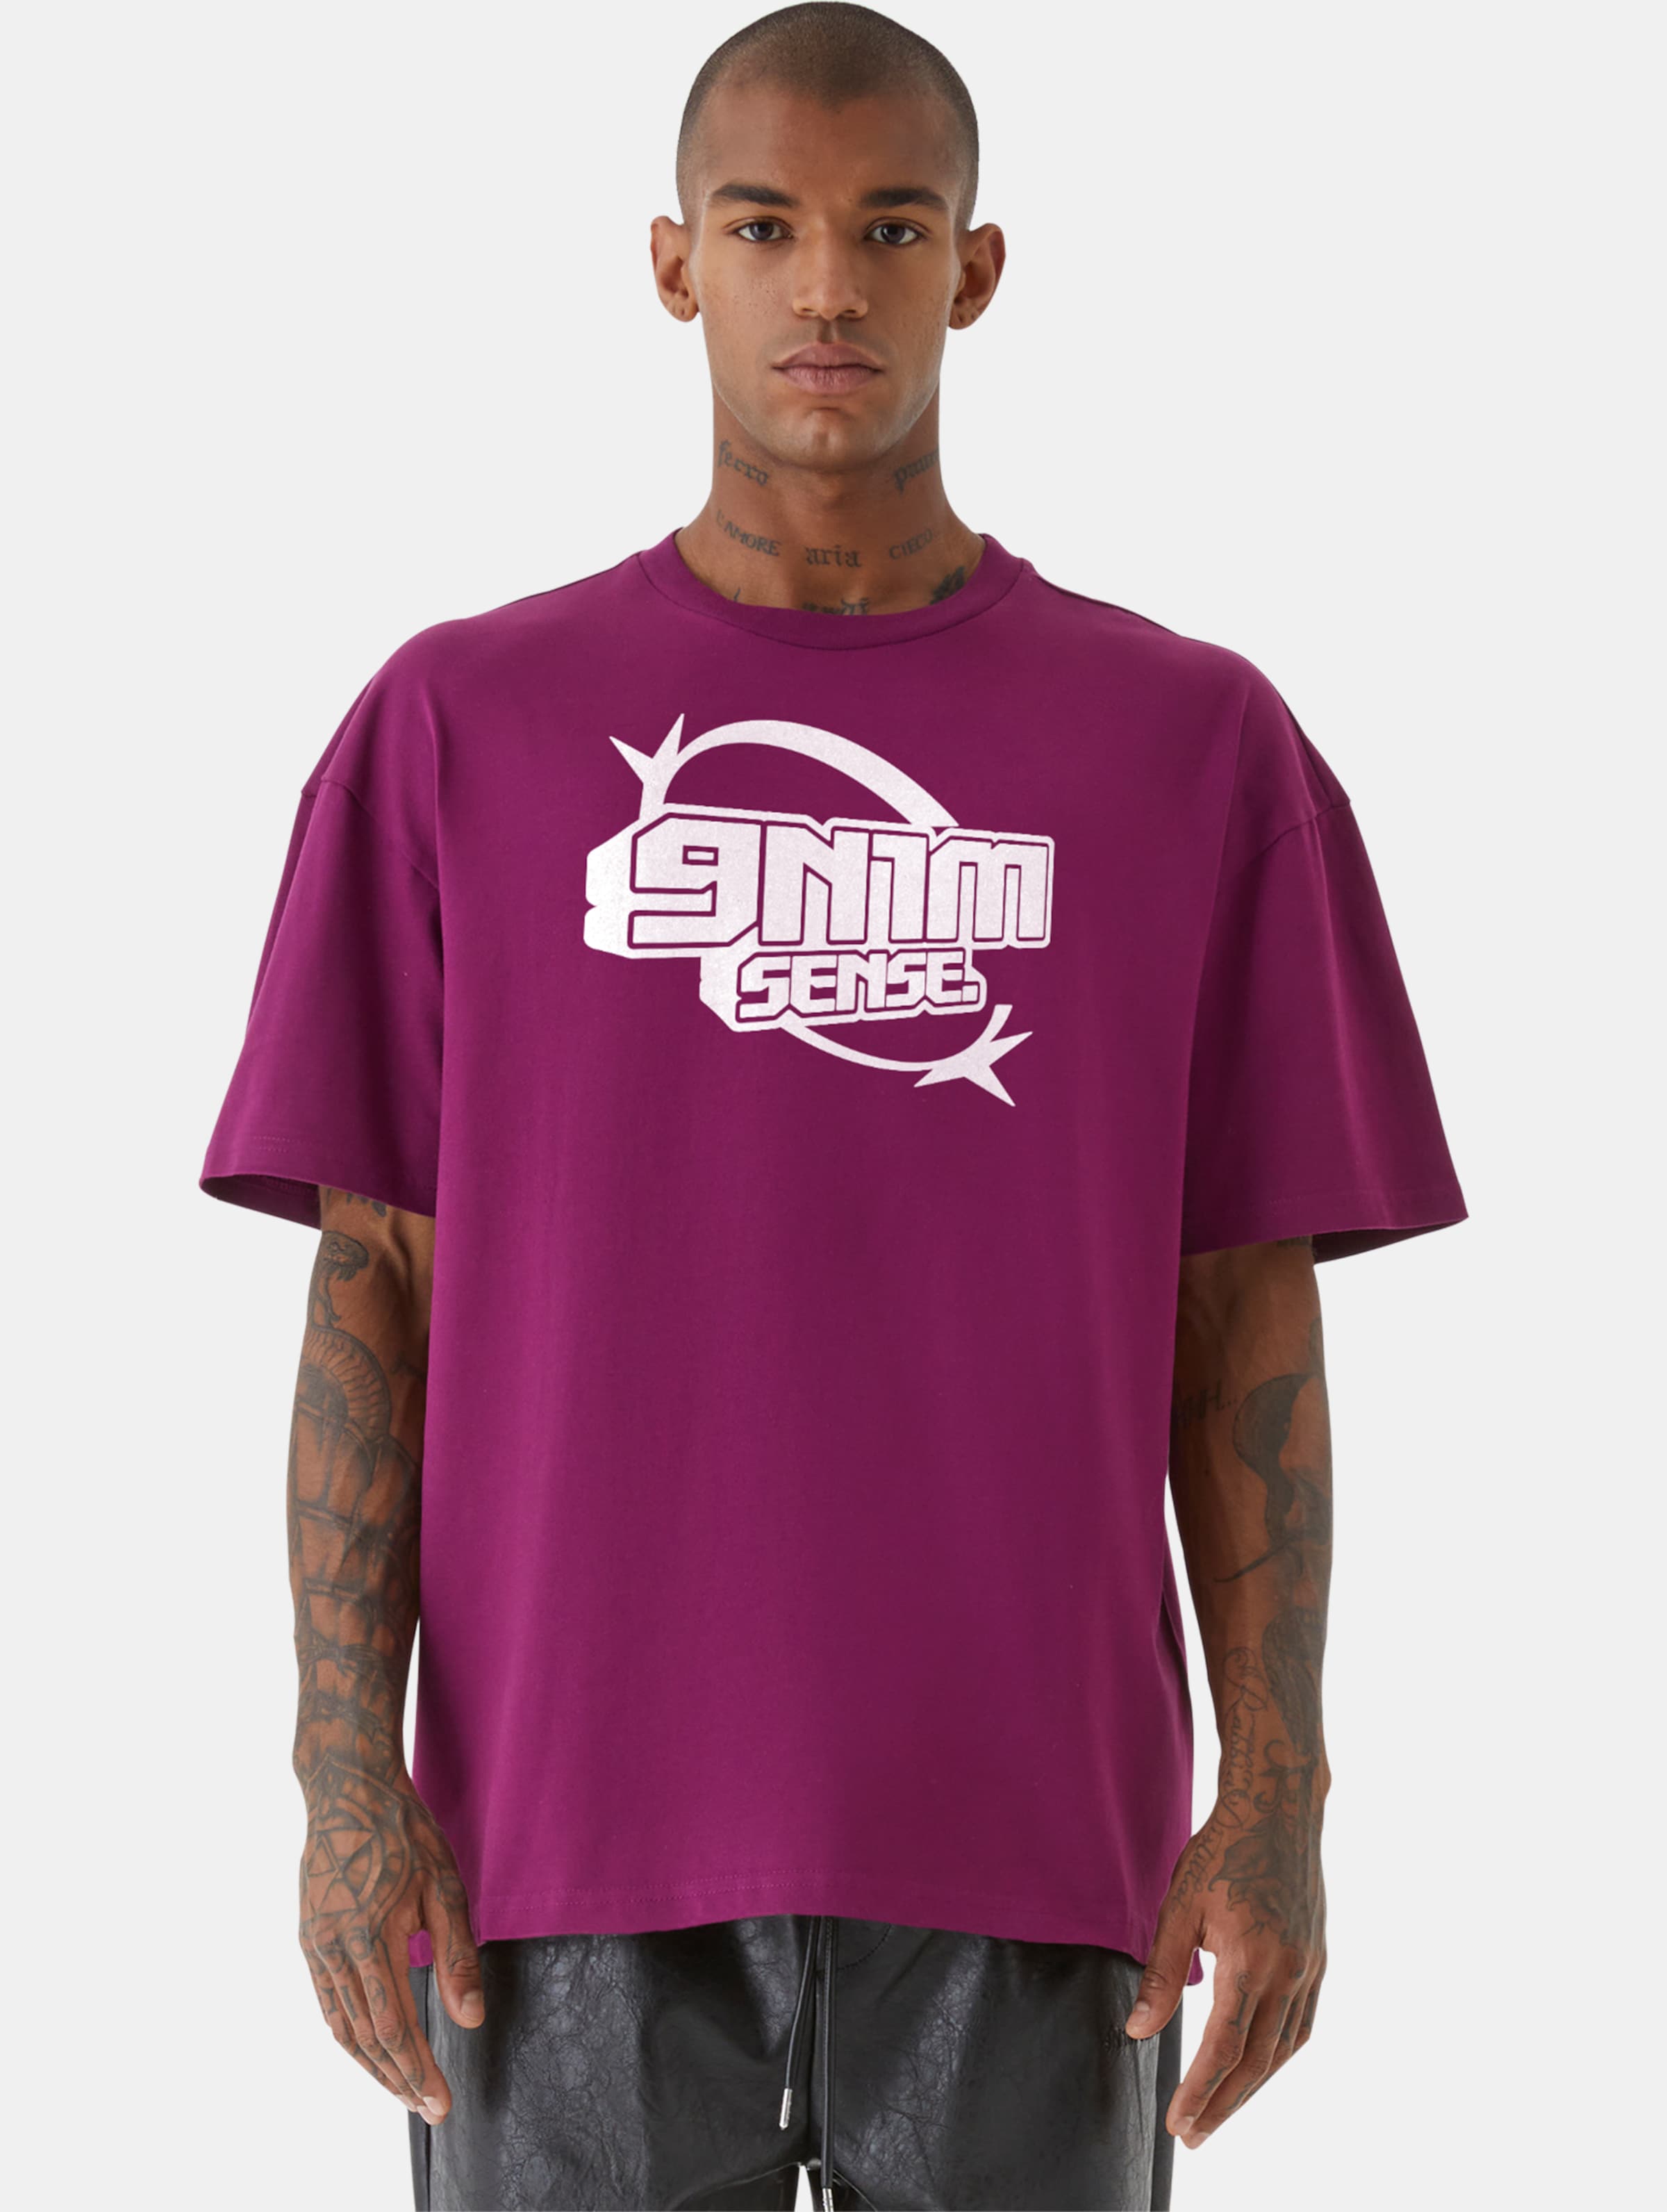 9N1M SENSE Y2K T-Shirt Männer,Unisex op kleur violet, Maat S